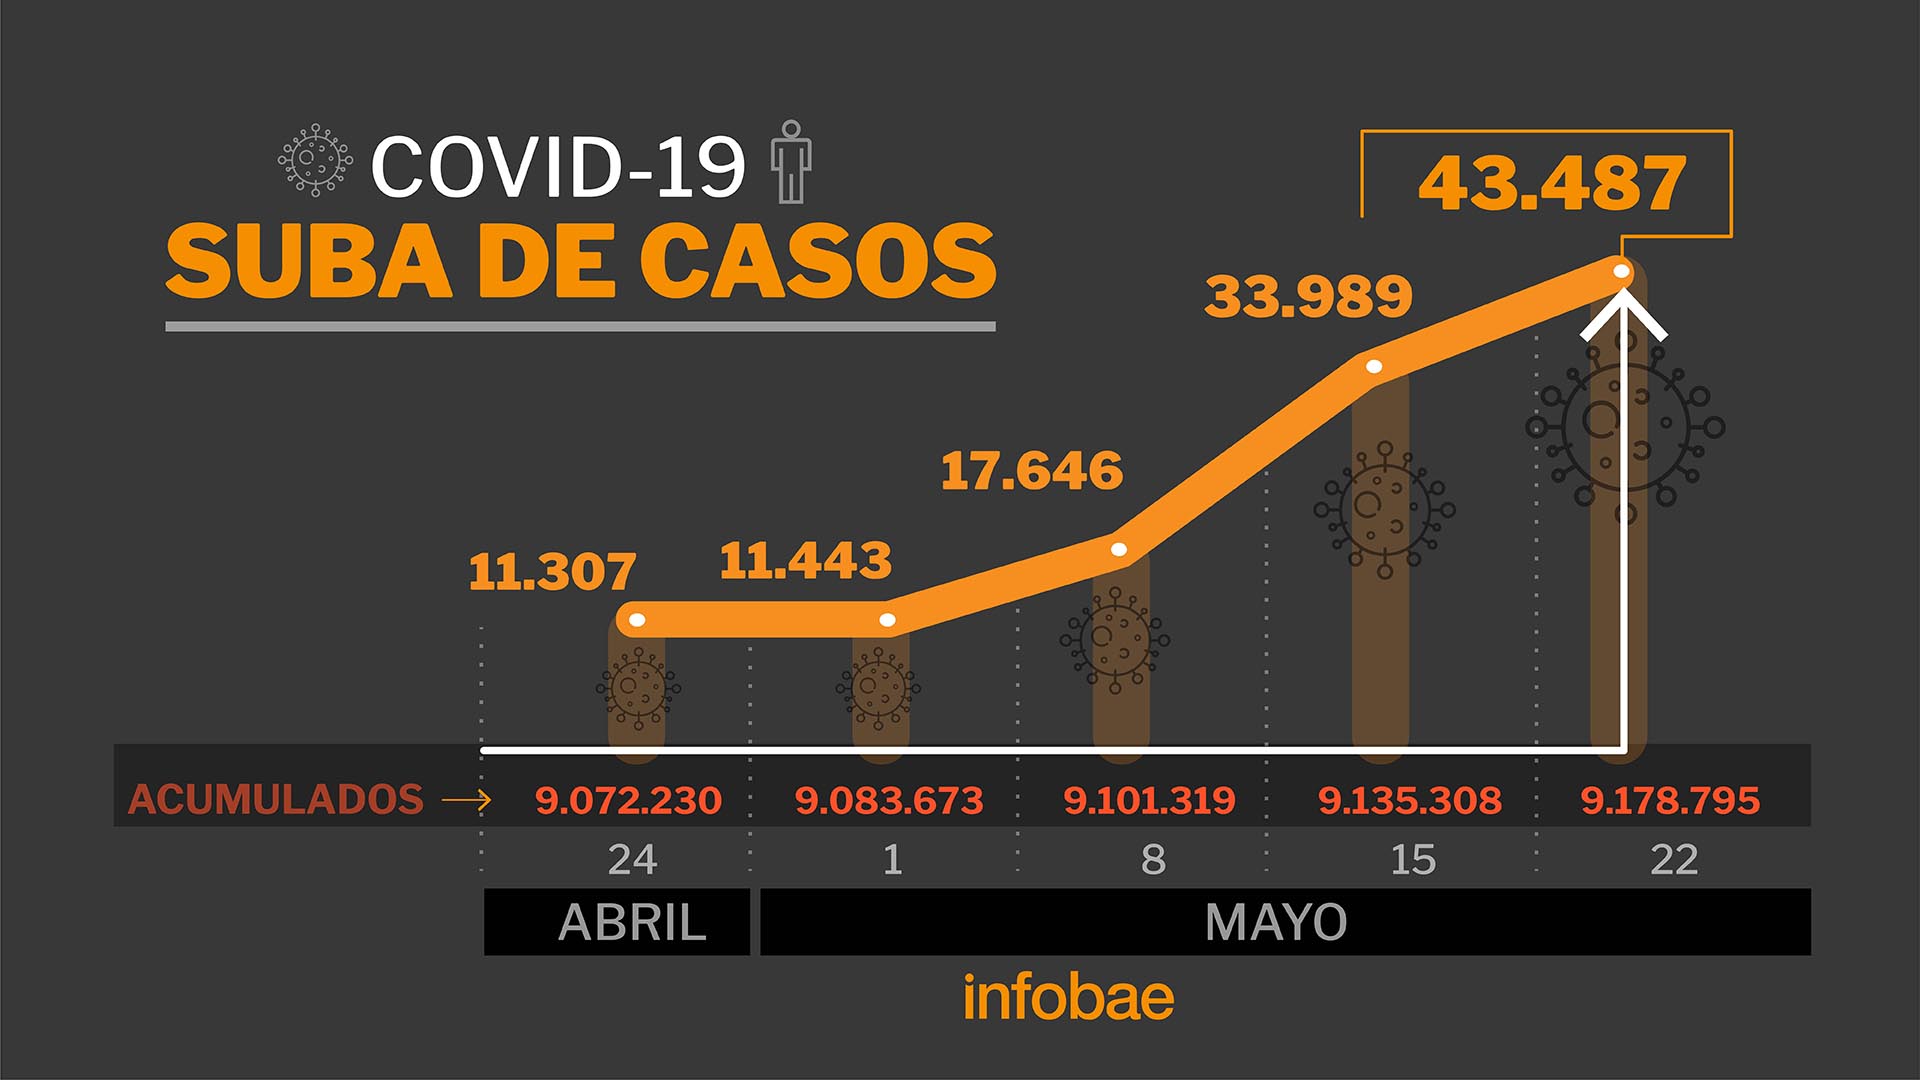 Los casos de COVID-19 pasaron en la Argentina de 11.307 el 24 de abril a 43.487 ayer (Infografía: Marcelo Regalado)